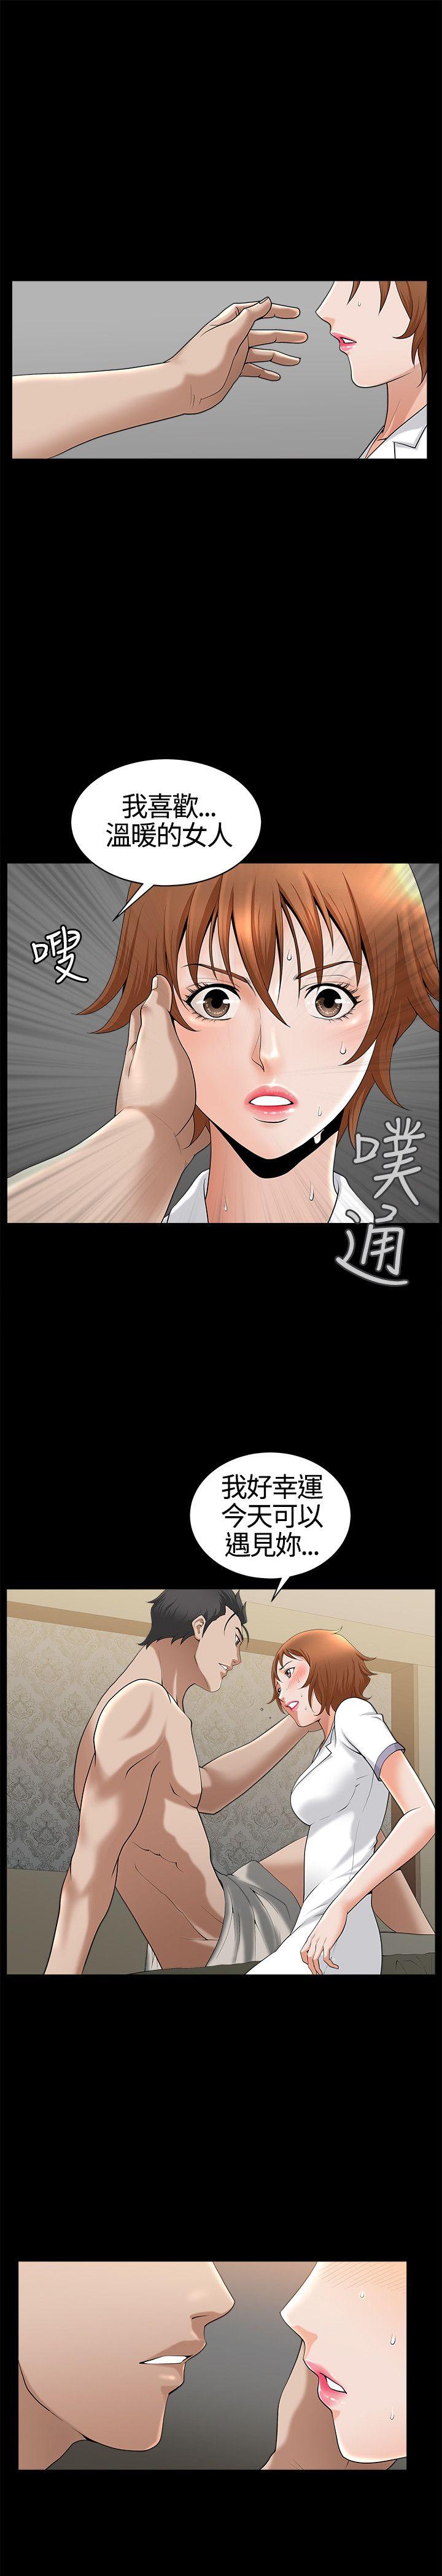 韩国污漫画 人妻性解放3:粗糙的手 第14话 9